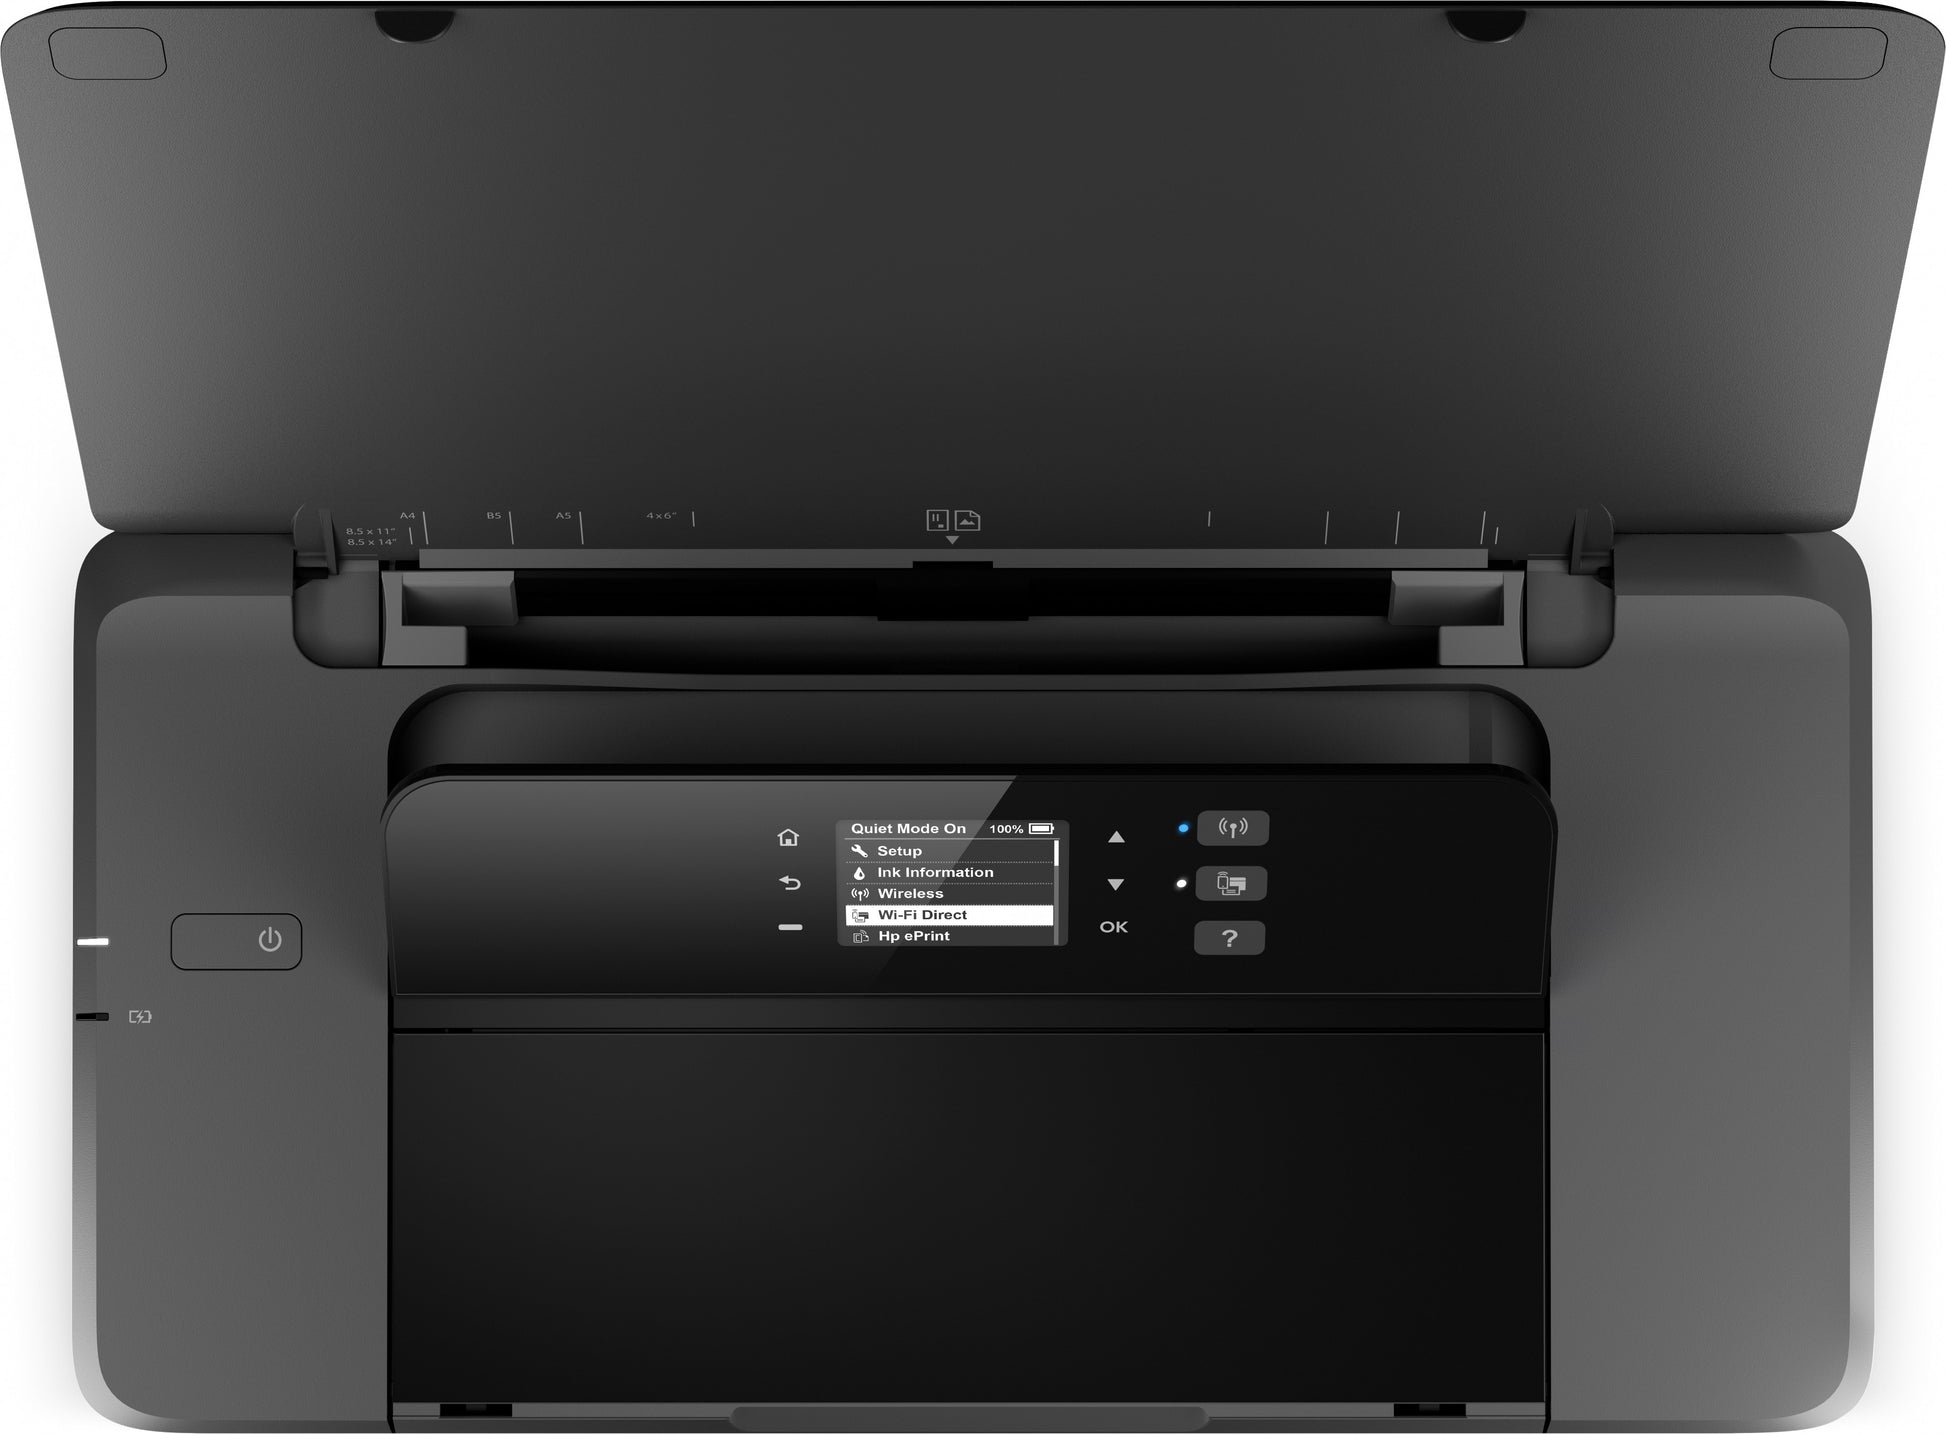 HP Officejet Impresora portátil 200, Color, Impresora para Oficina pequeña,  Estampado, Impresión desde USB frontal en